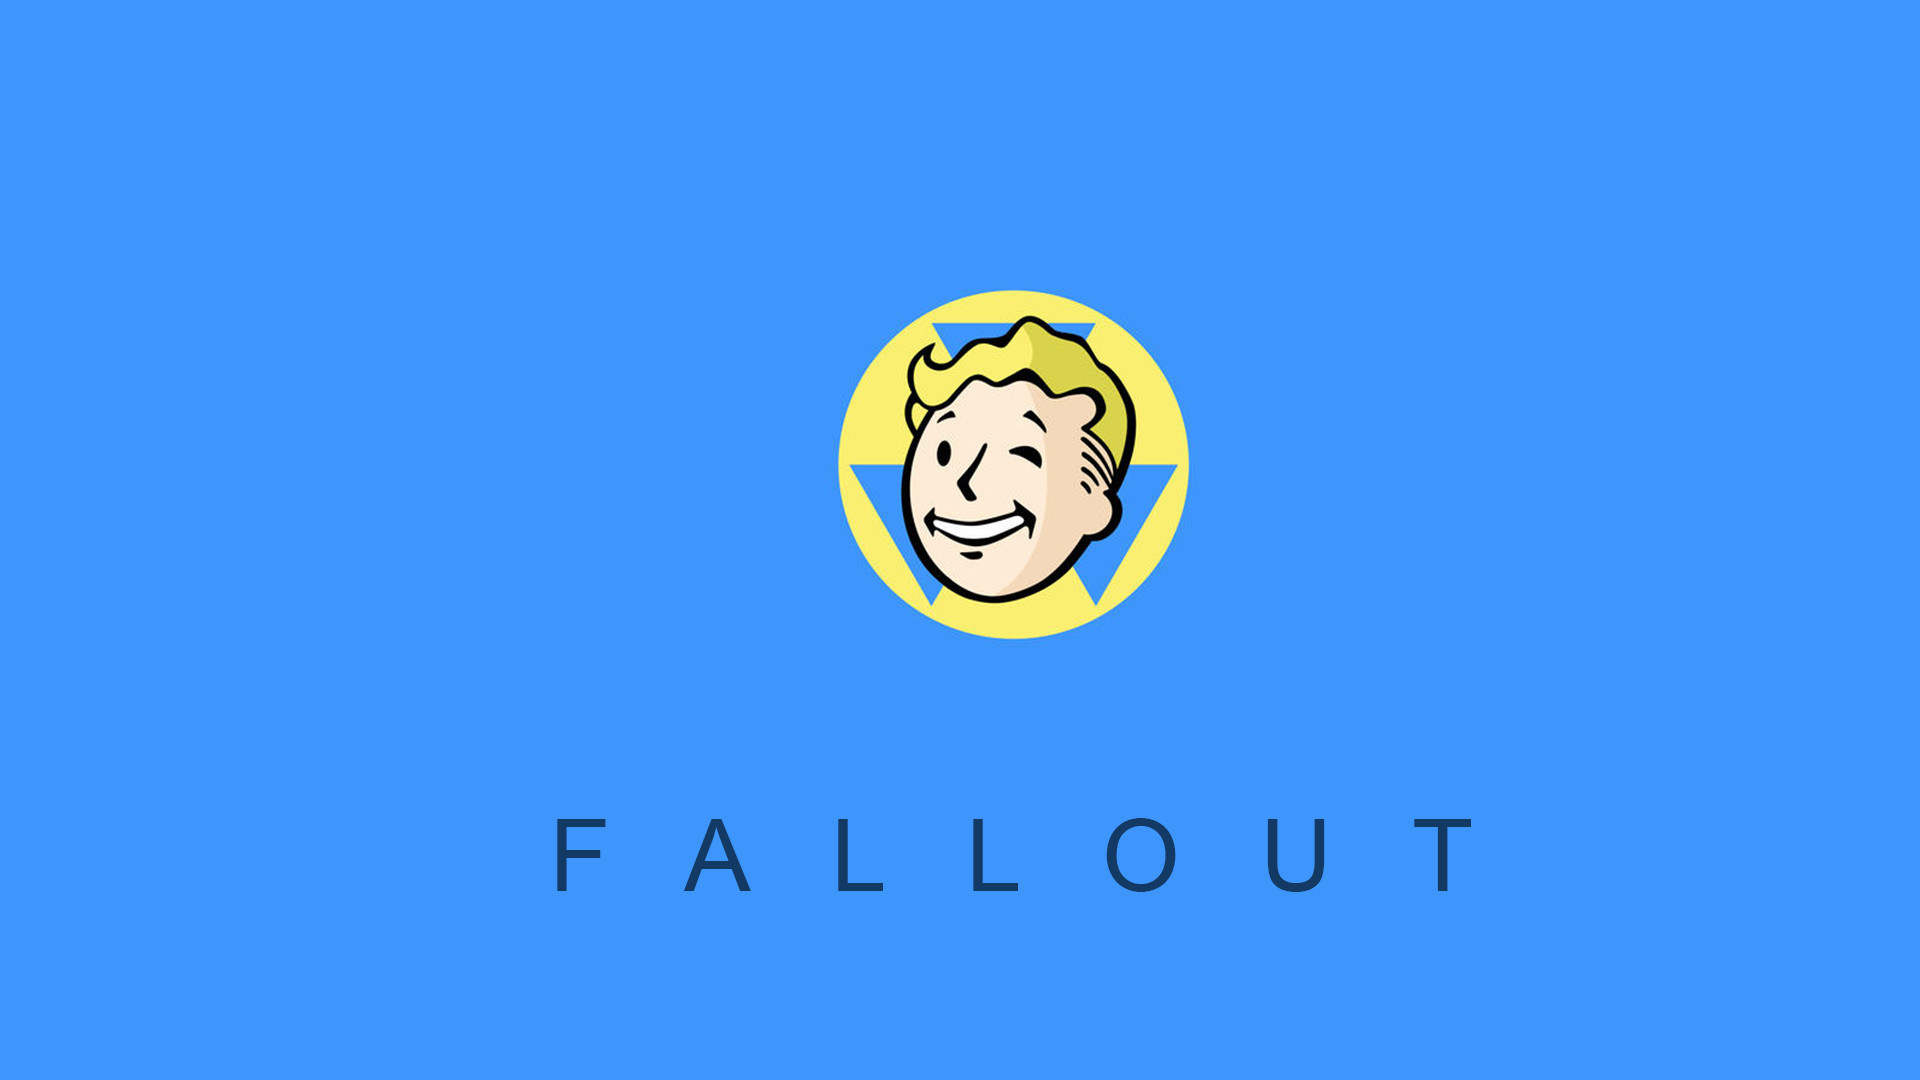 Fallout Vault Boy Wallpaper 1920 x 1080